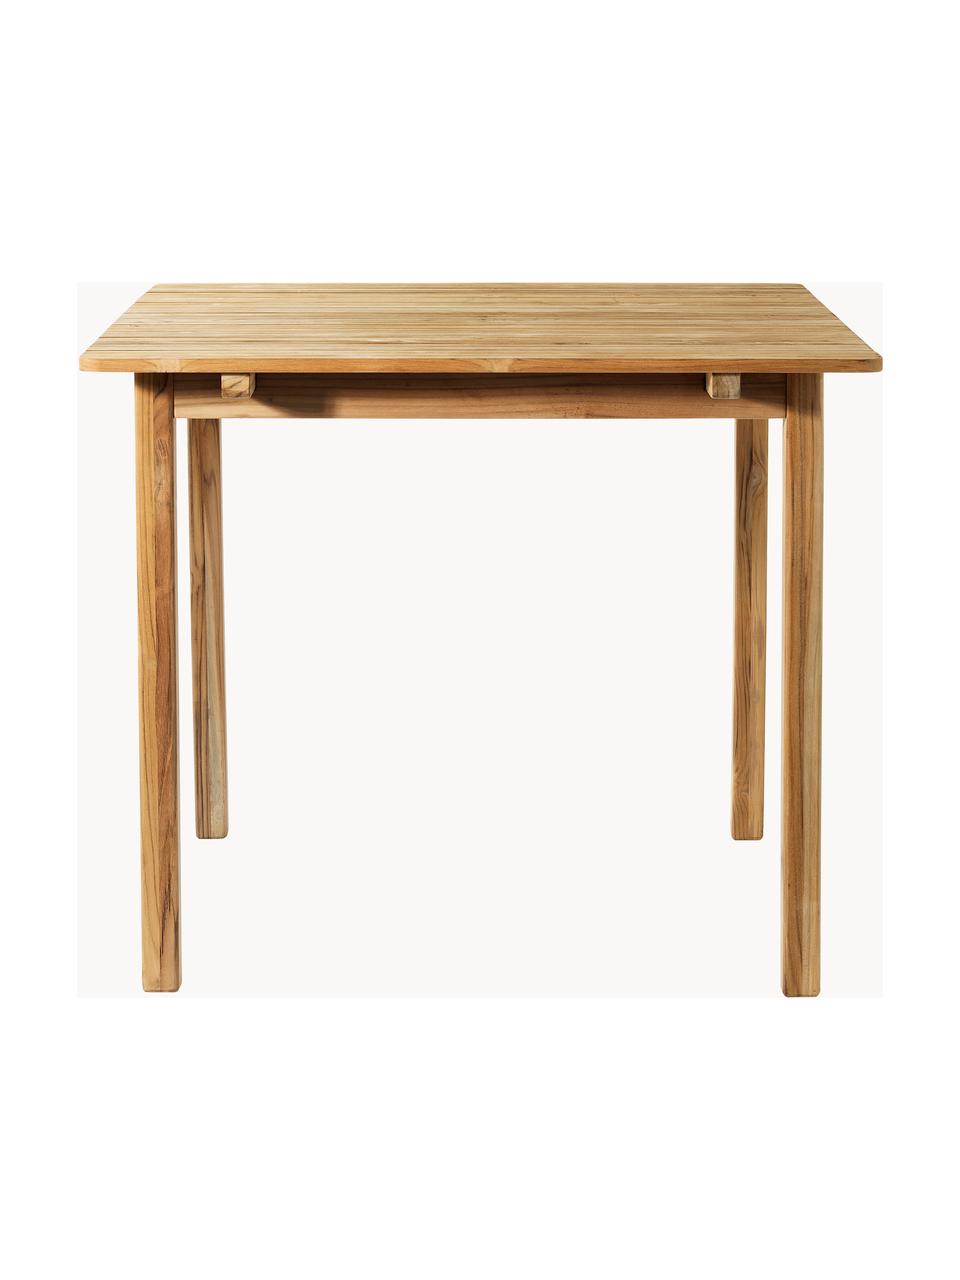 Zahradní stůl z teakového dřeva Sammen, různé velikosti, Teakové dřevo, certifikace FSC, Teakové dřevo, Š 105 cm, H 90 cm